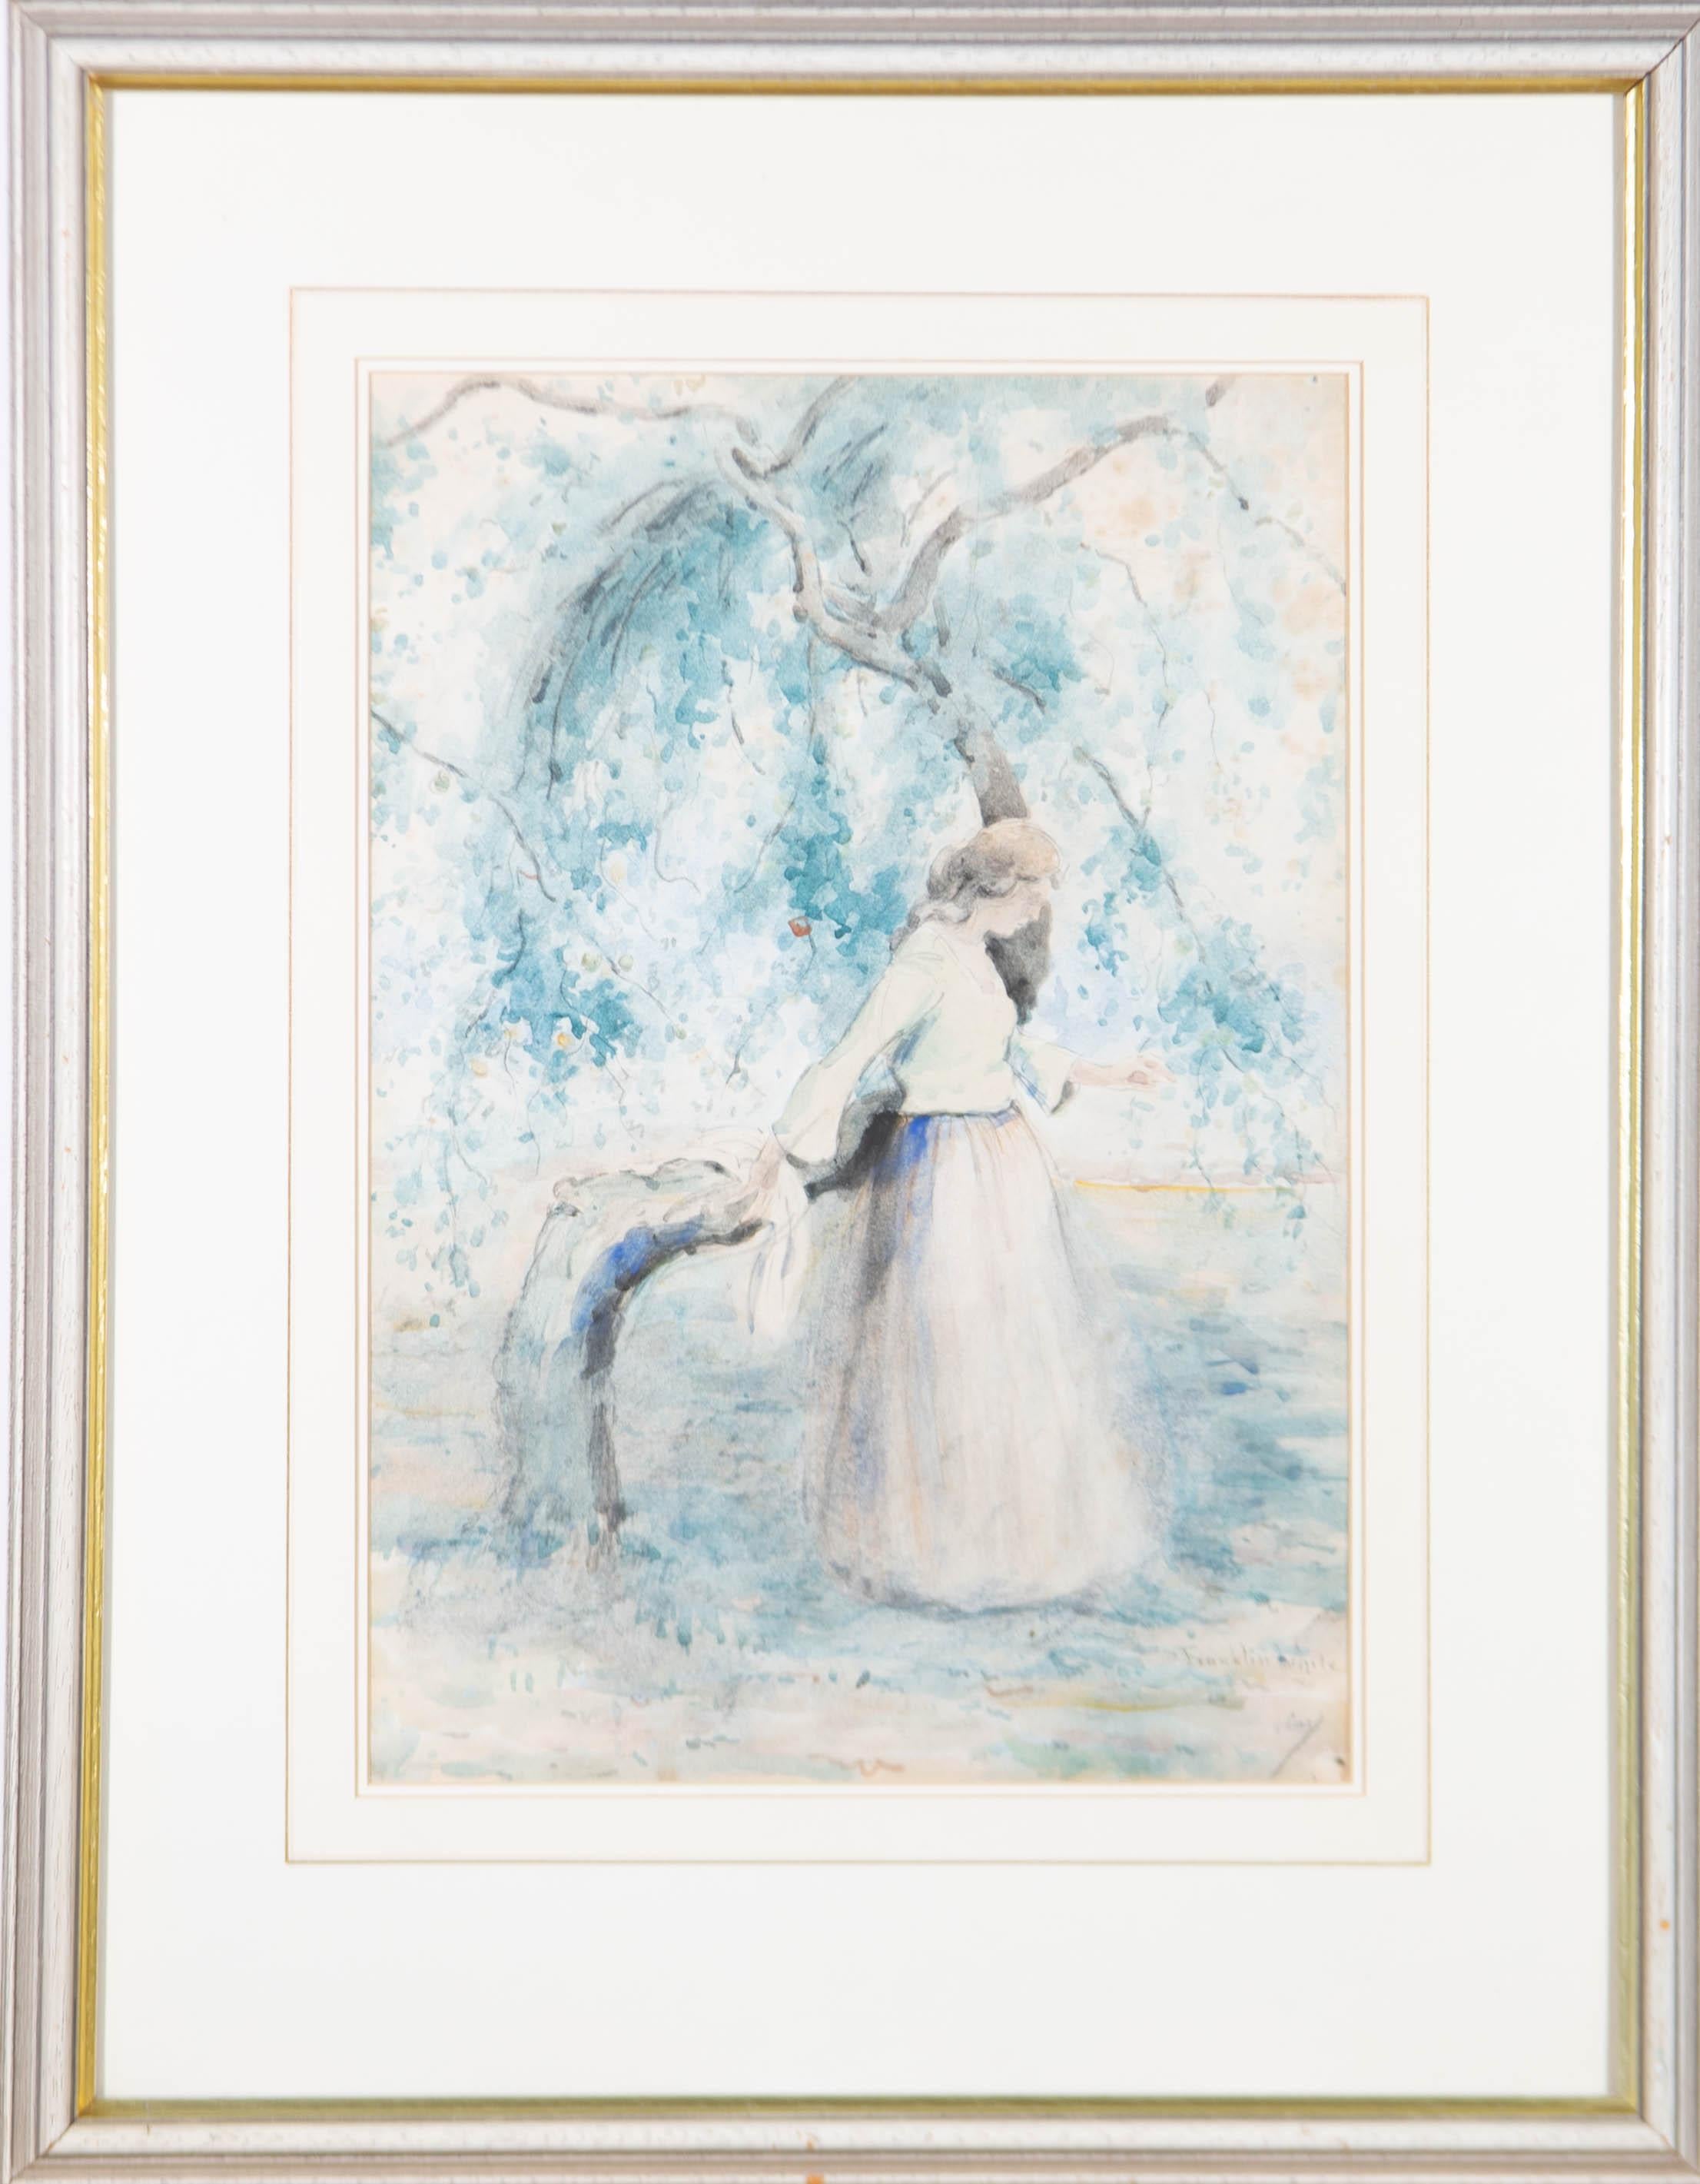 Eine zarte Aquarellstudie des Künstlers Franklin White (1892-1975), die eine junge Frau zeigt, die sich unter einem Apfelbaum ausruht. Die subtilen Farben und der zarte Farbauftrag sind typisch für Whites Stil und verleihen der Komposition etwas